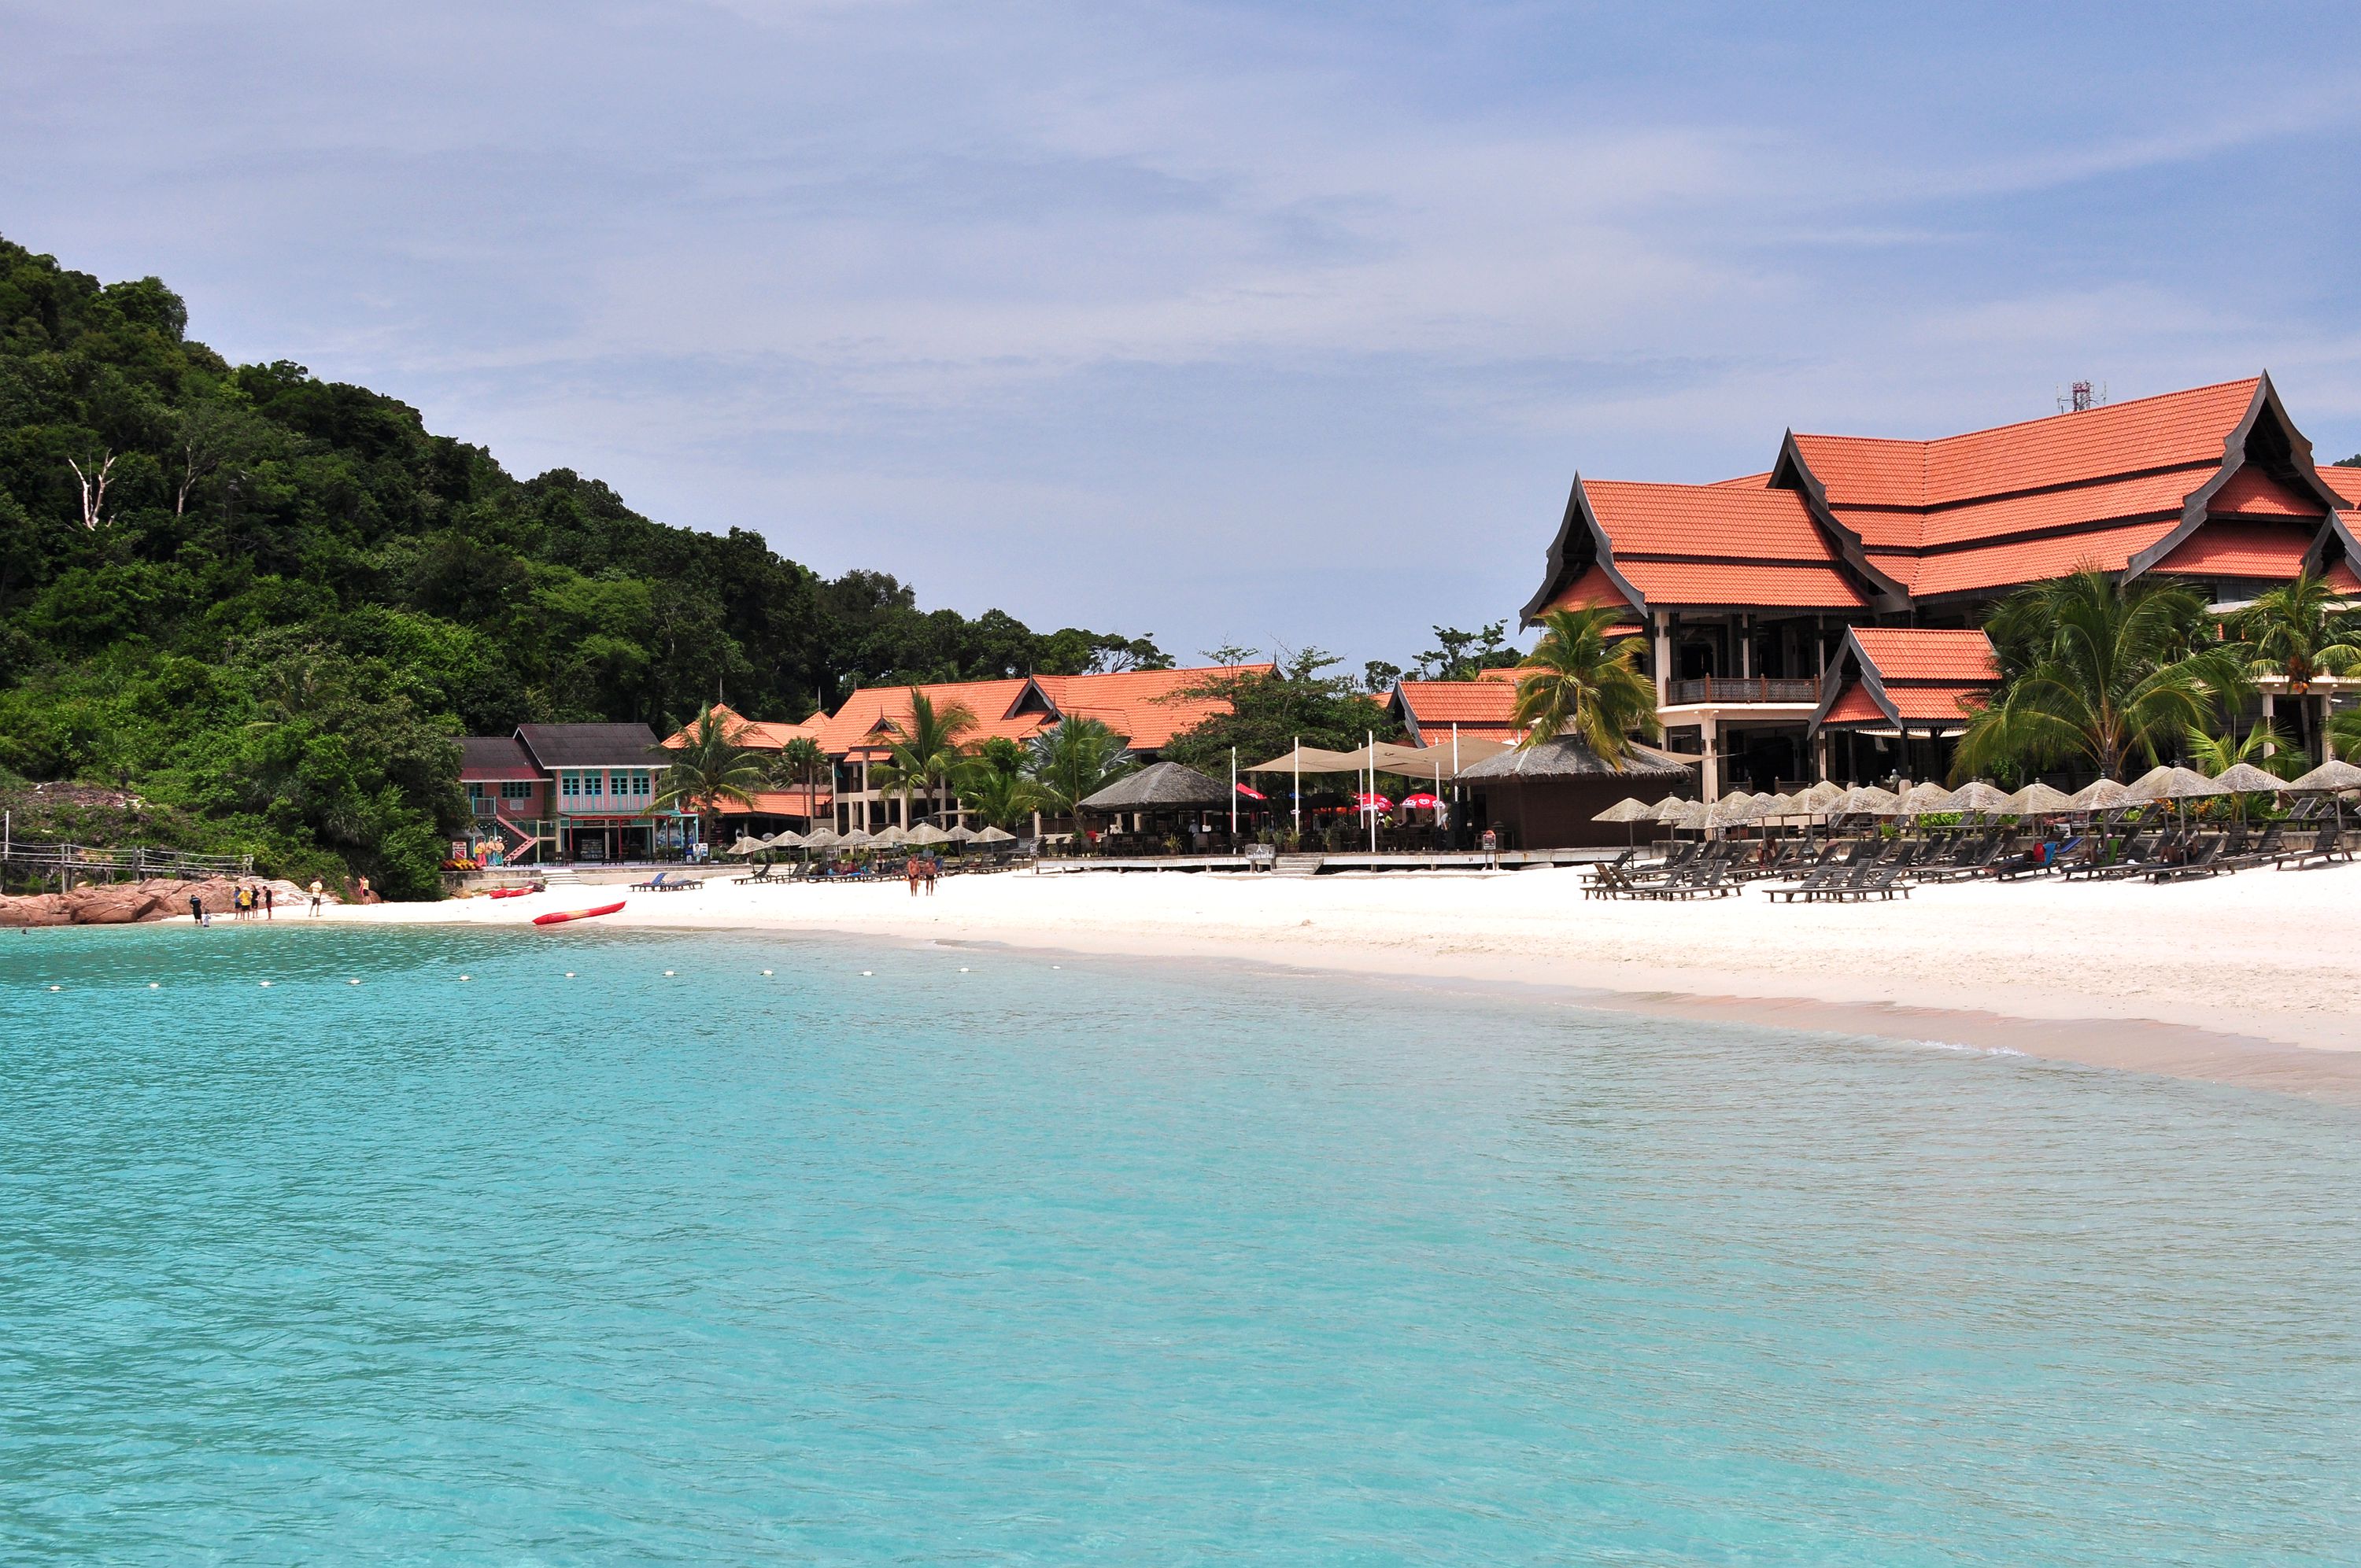 普吉岛奥瑞格拉古娜别墅度假酒店Outrigger Laguna Phuket Resort and Villas – 爱岛人 海岛旅行专家